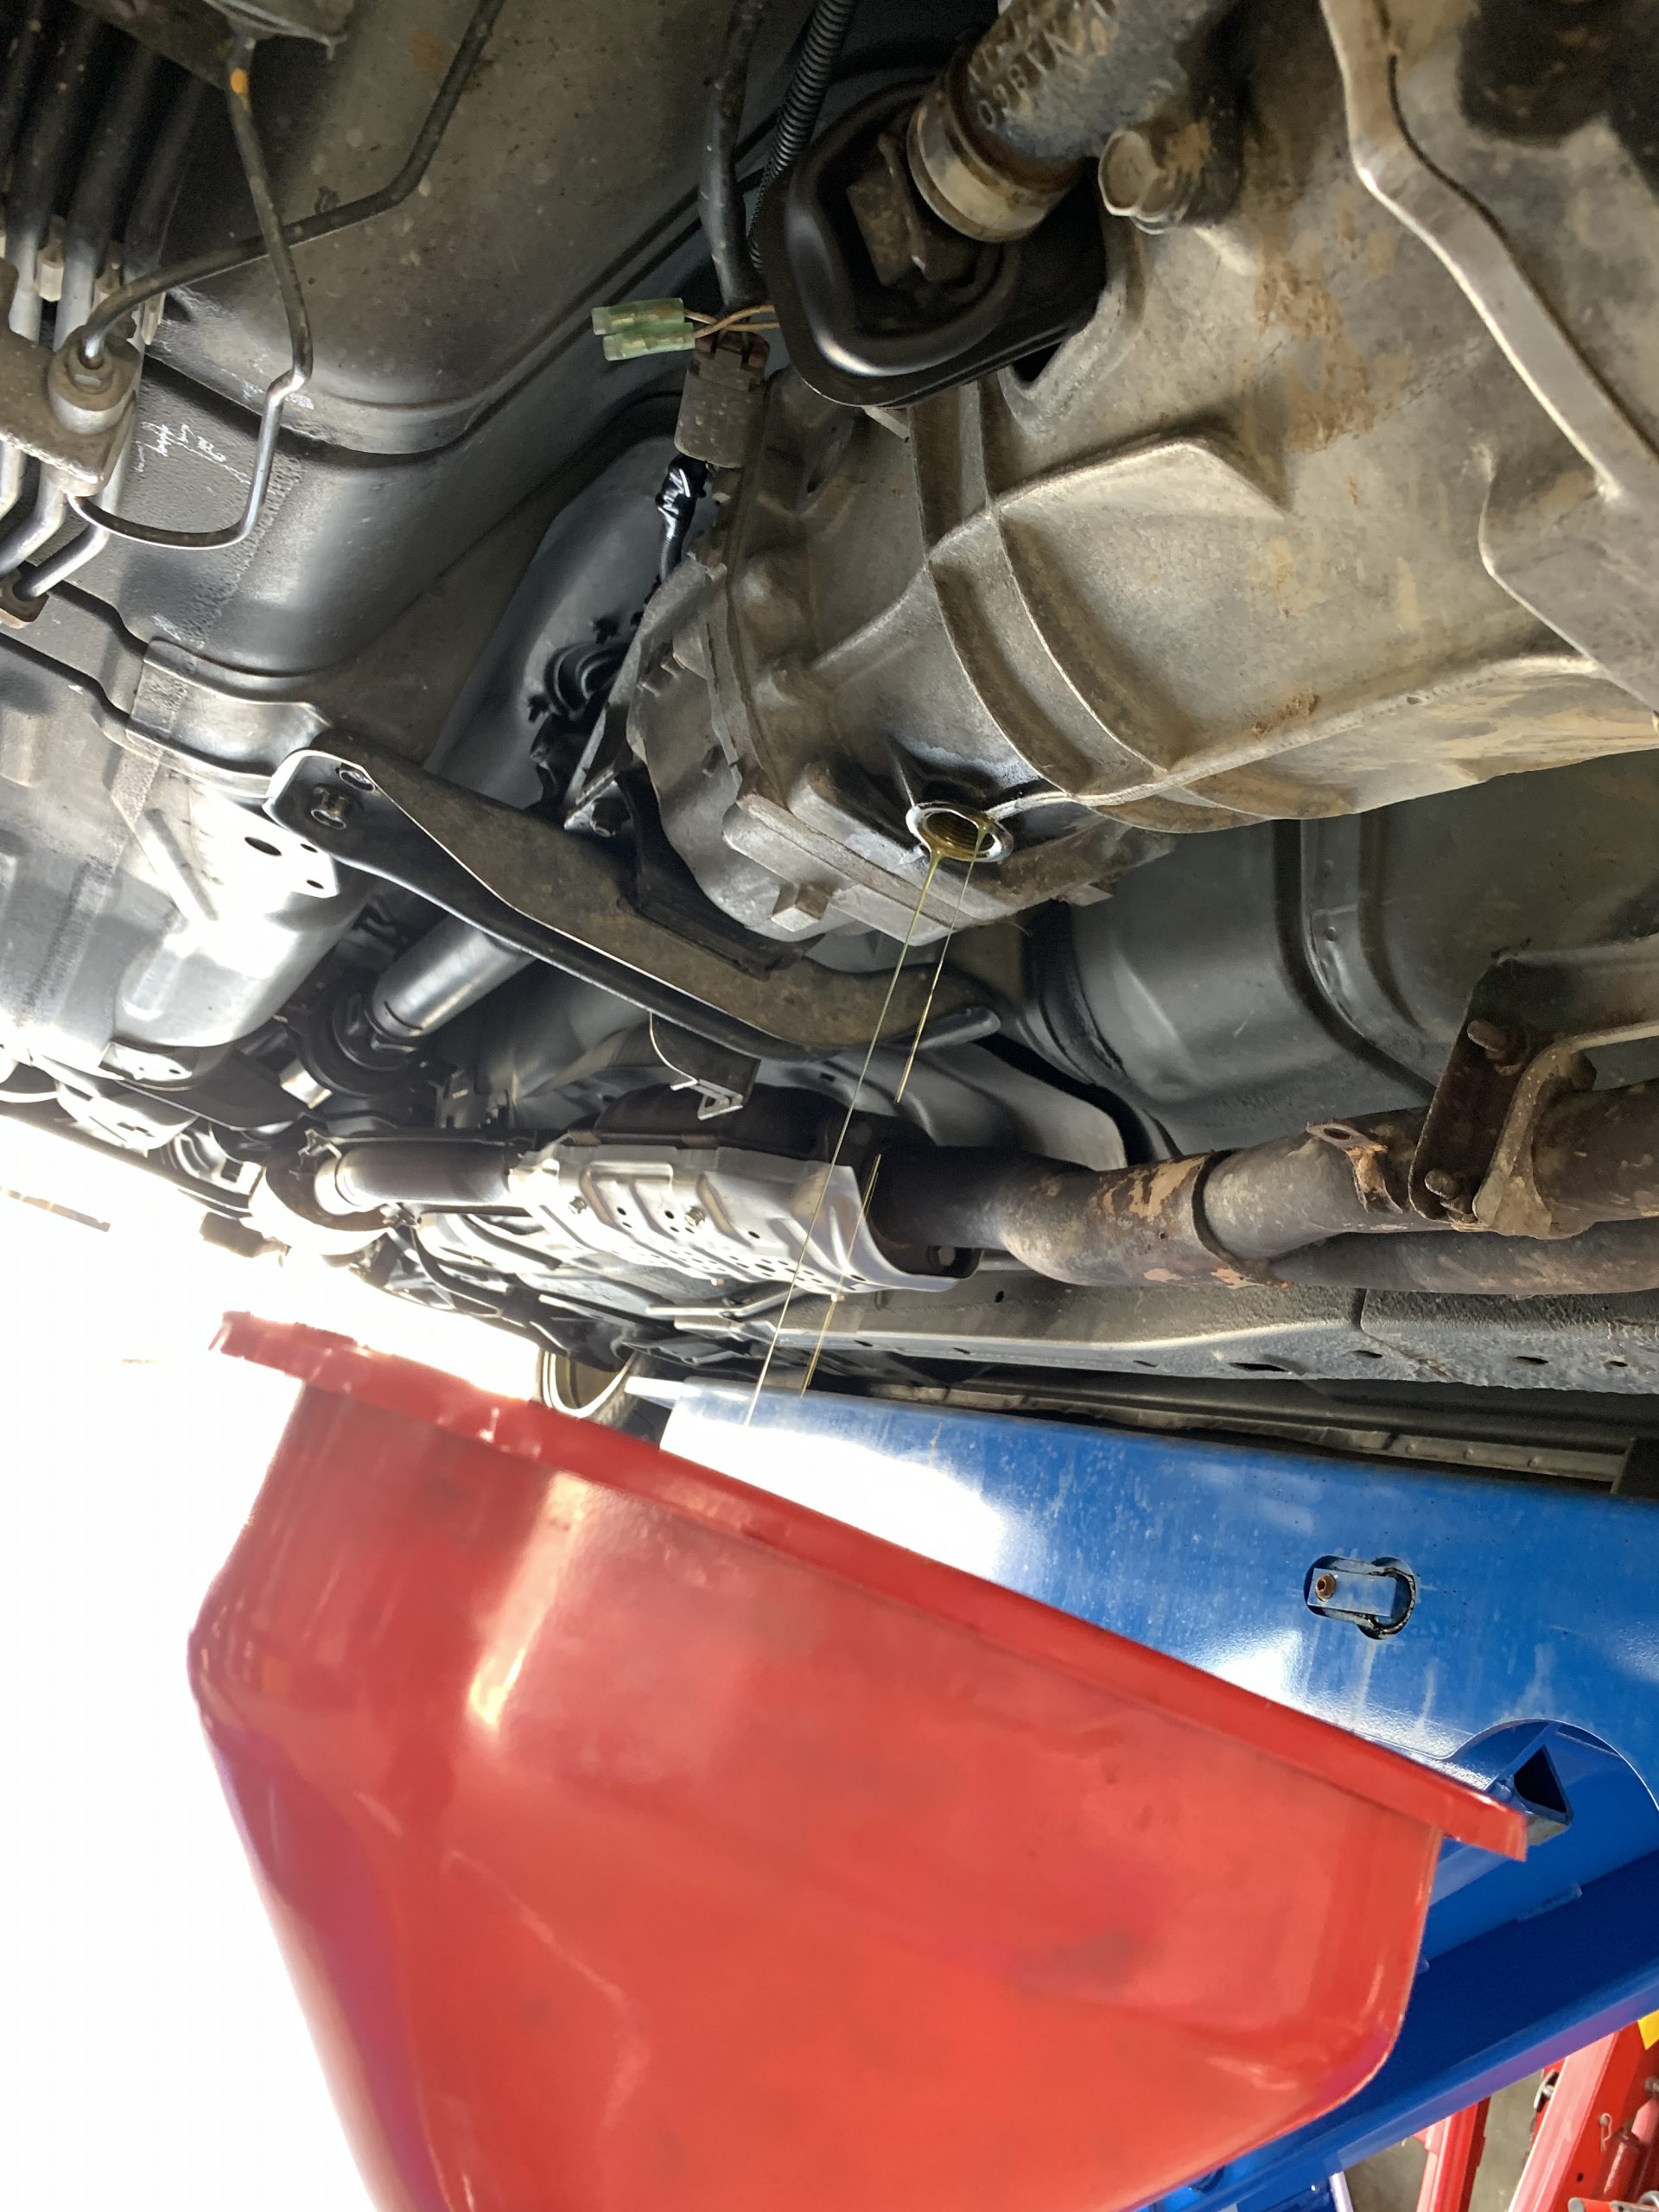 S15 ミッションオイル交換 車検 故障修理は安心 満足 確実のピットワン タイヤ アライメントなど足回りの事はピットワンタイヤーズにお任せください